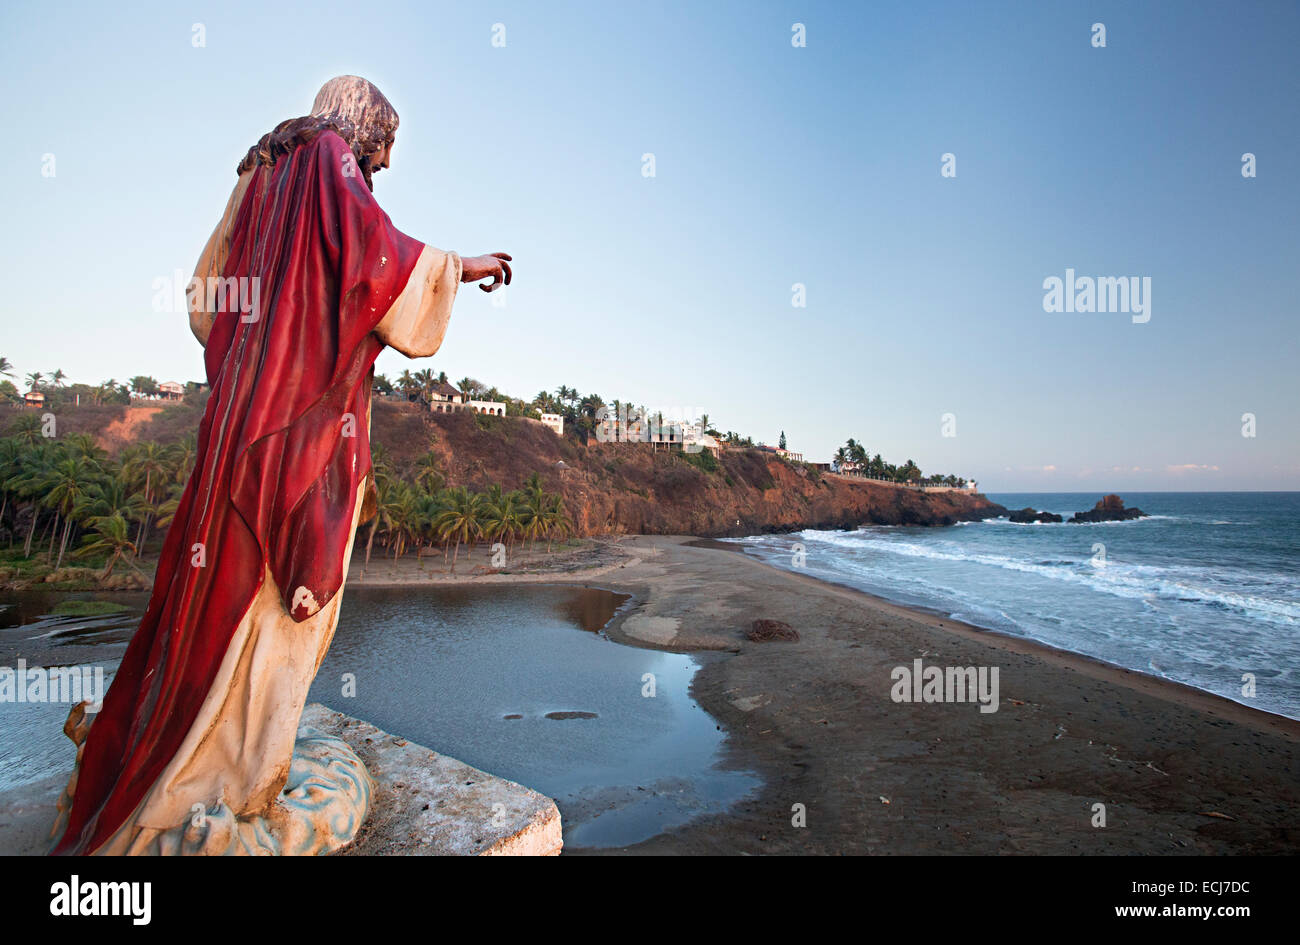 Statua di Gesù indossa mantello rosso si affaccia su di una spiaggia e piccola città. Foto Stock